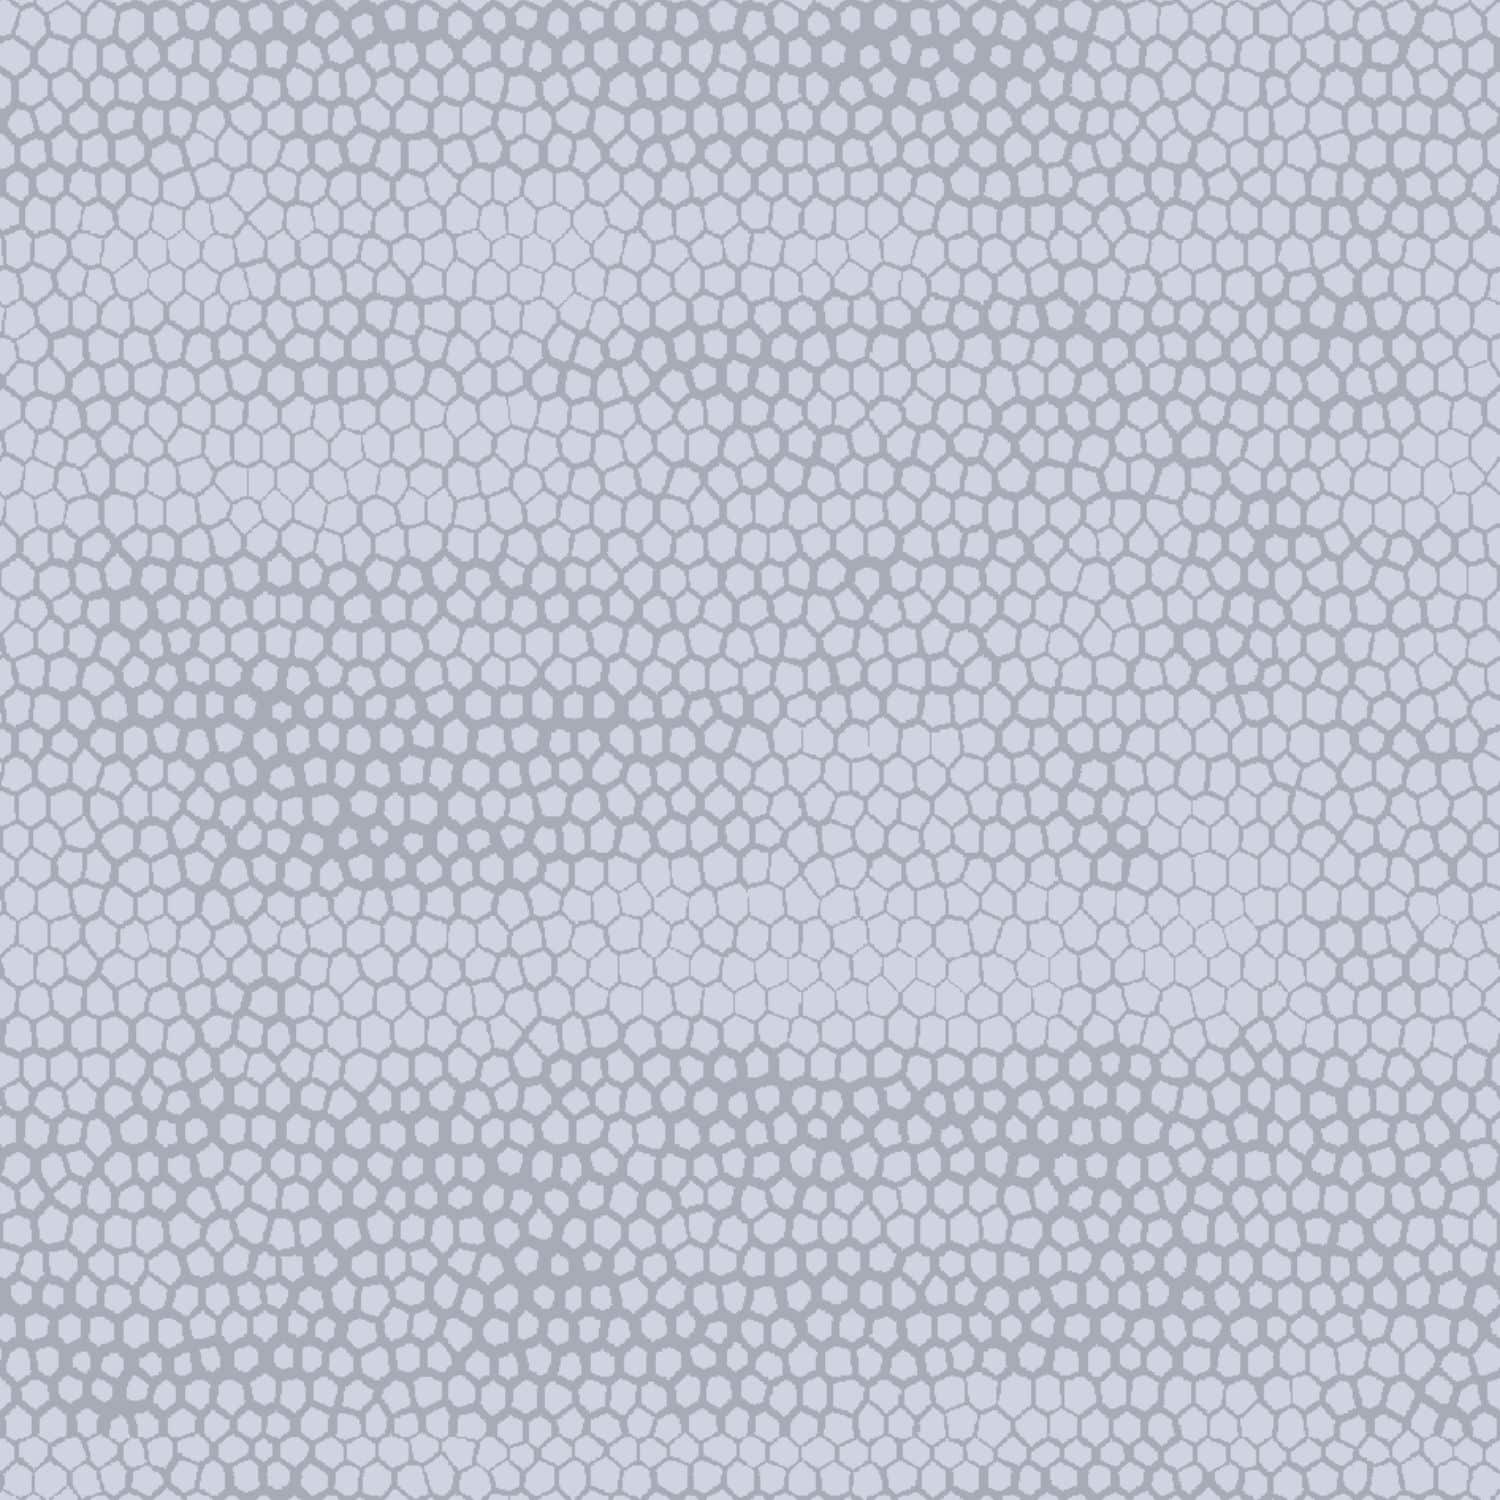 bon-bon-grigio-copritutto-telo-arredo-tuttofare-borbon-grigio-classico-pattern.jpg